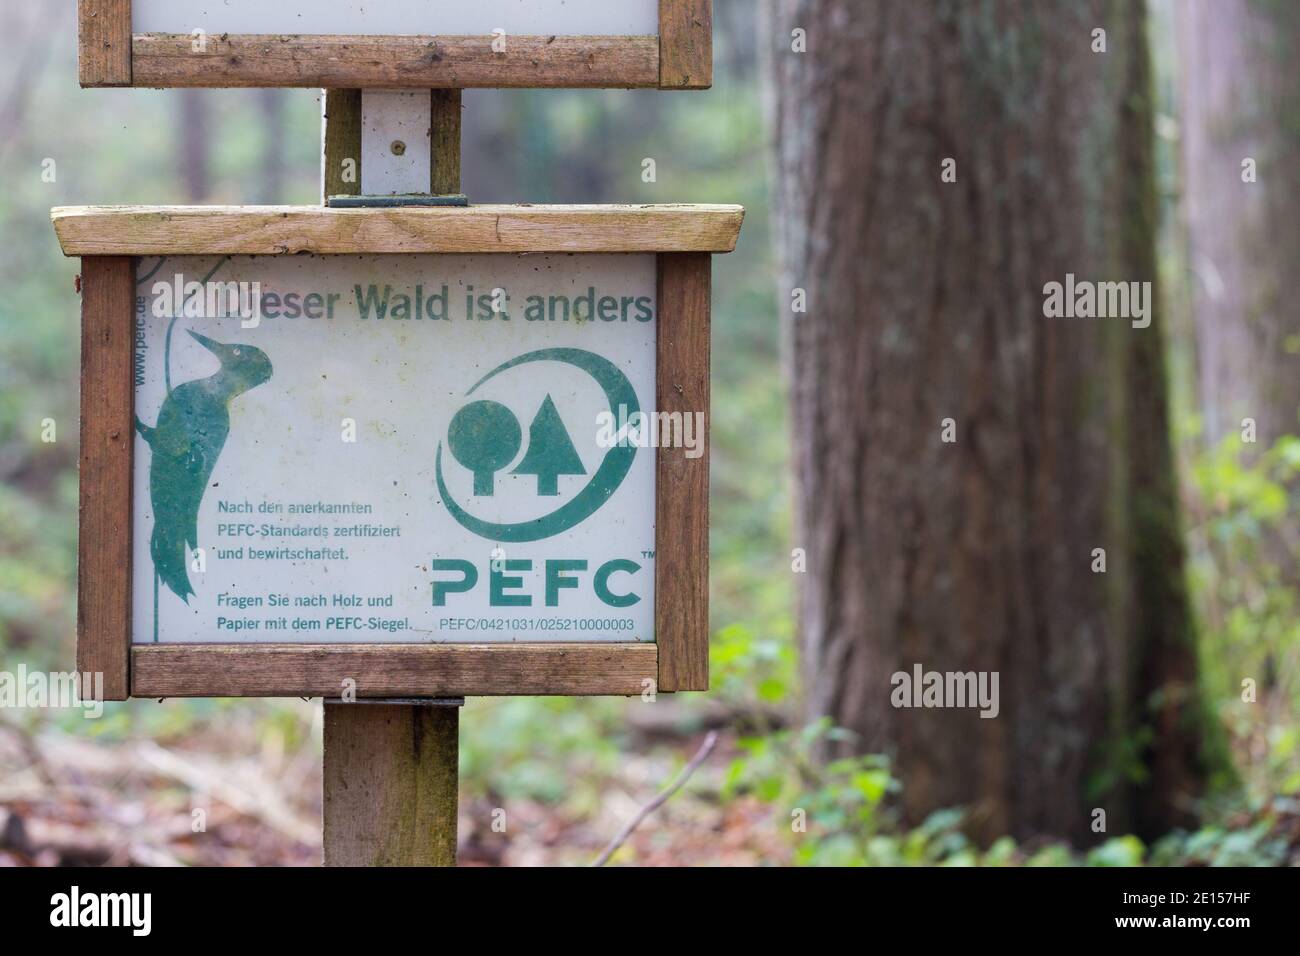 Landsberg, Germania - 25 novembre 2020: Insegna PEFC in una foresta bavarese. Albero sullo sfondo. Le foreste certificate PEFC sono gestite in modo sostenibile. Foto Stock